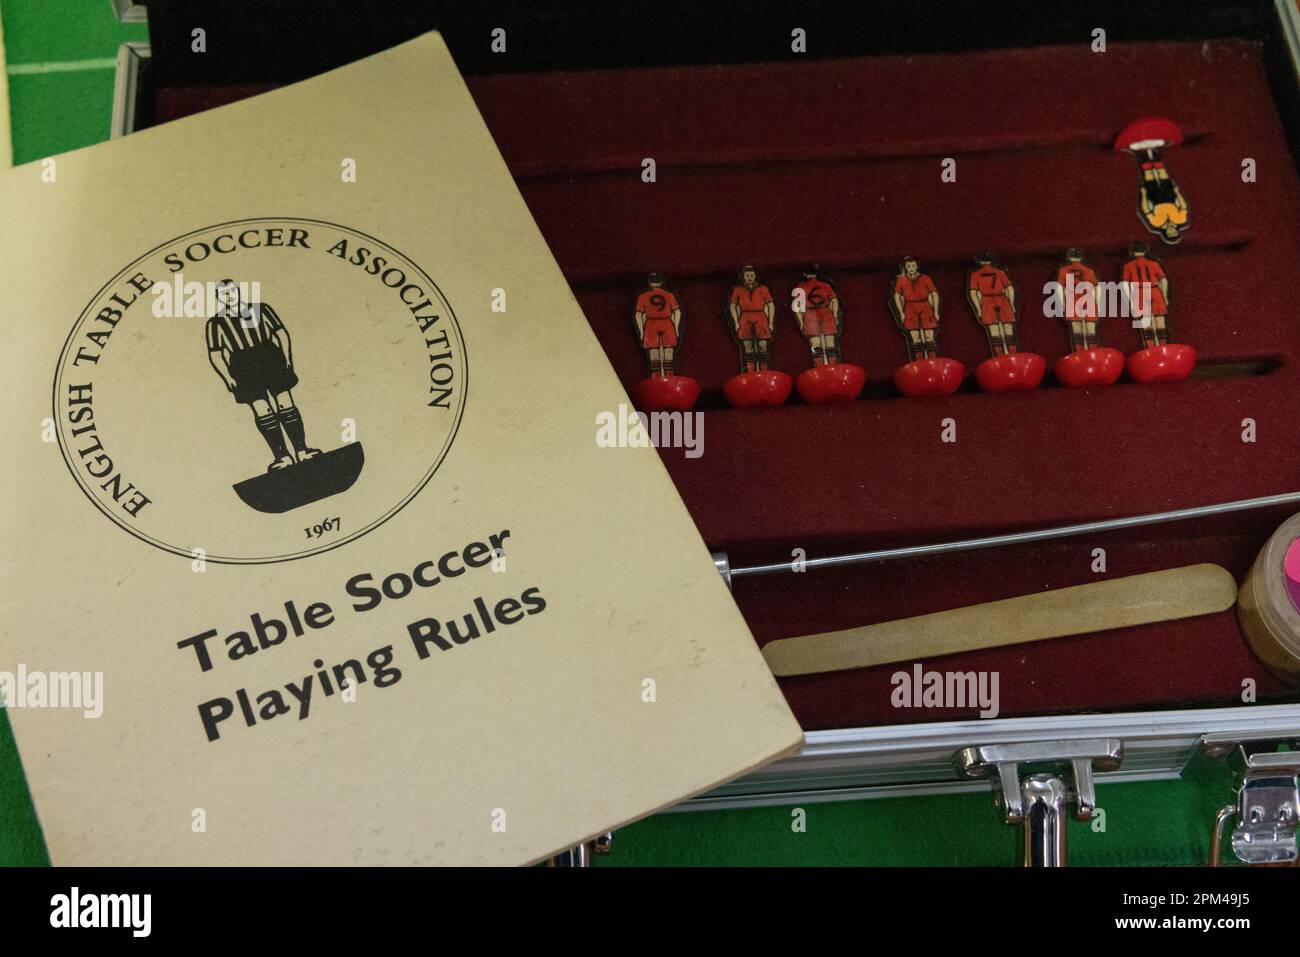 Mitglieder des subbuteo Table Soccer Players' Association nehmen an einem Turnier Teil, bei dem Originalfiguren aus dem ersten Spiel des Jahres 1947 verwendet werden Stockfoto